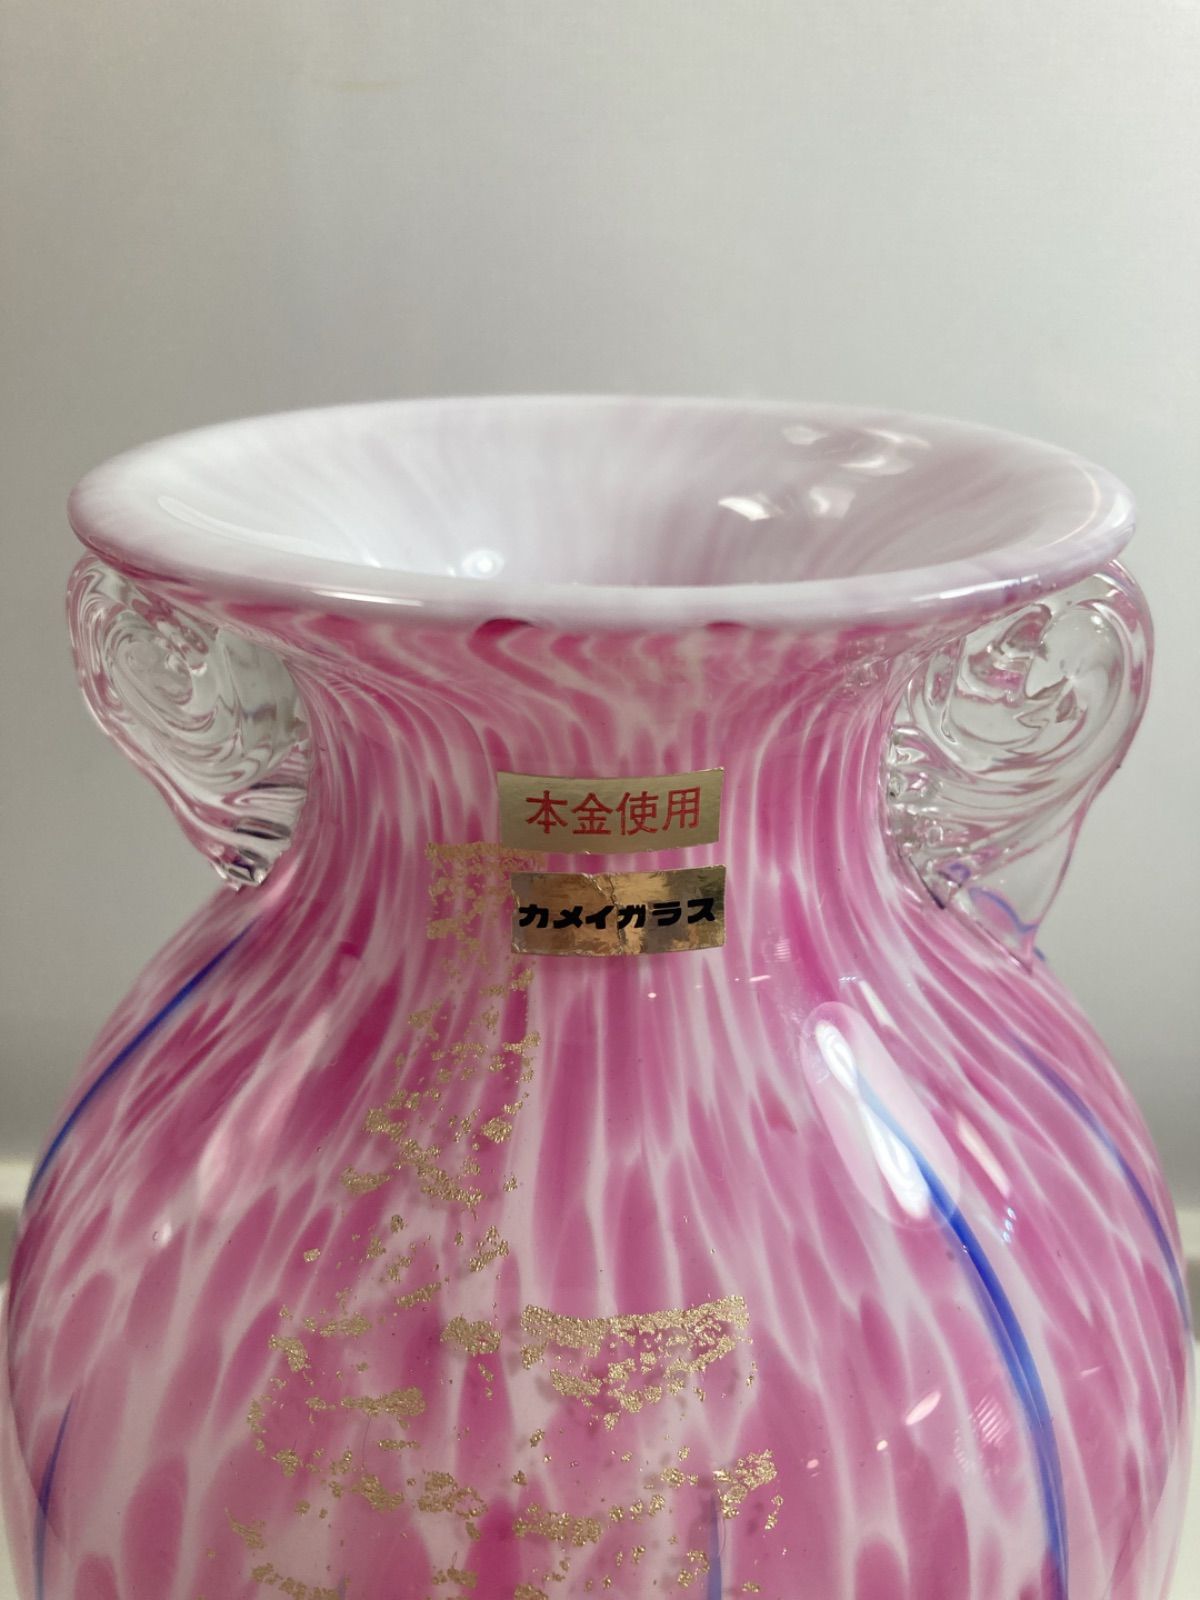 カメイガラス 花瓶 ピンク - 花瓶